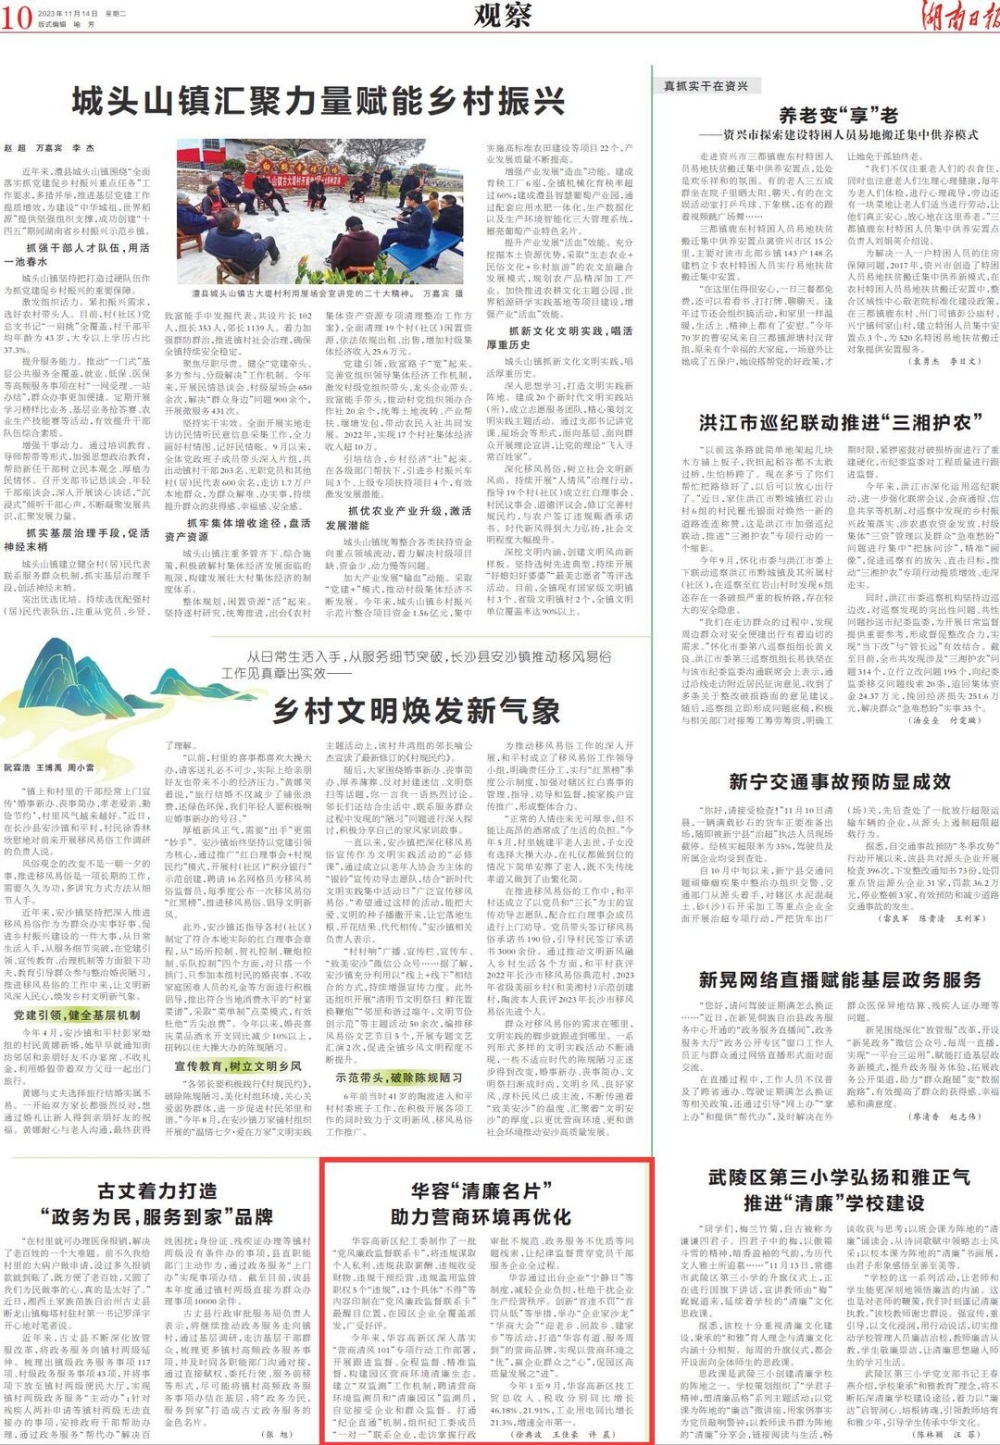 湖南日报丨华容“清廉名片”助力营商环境再优化